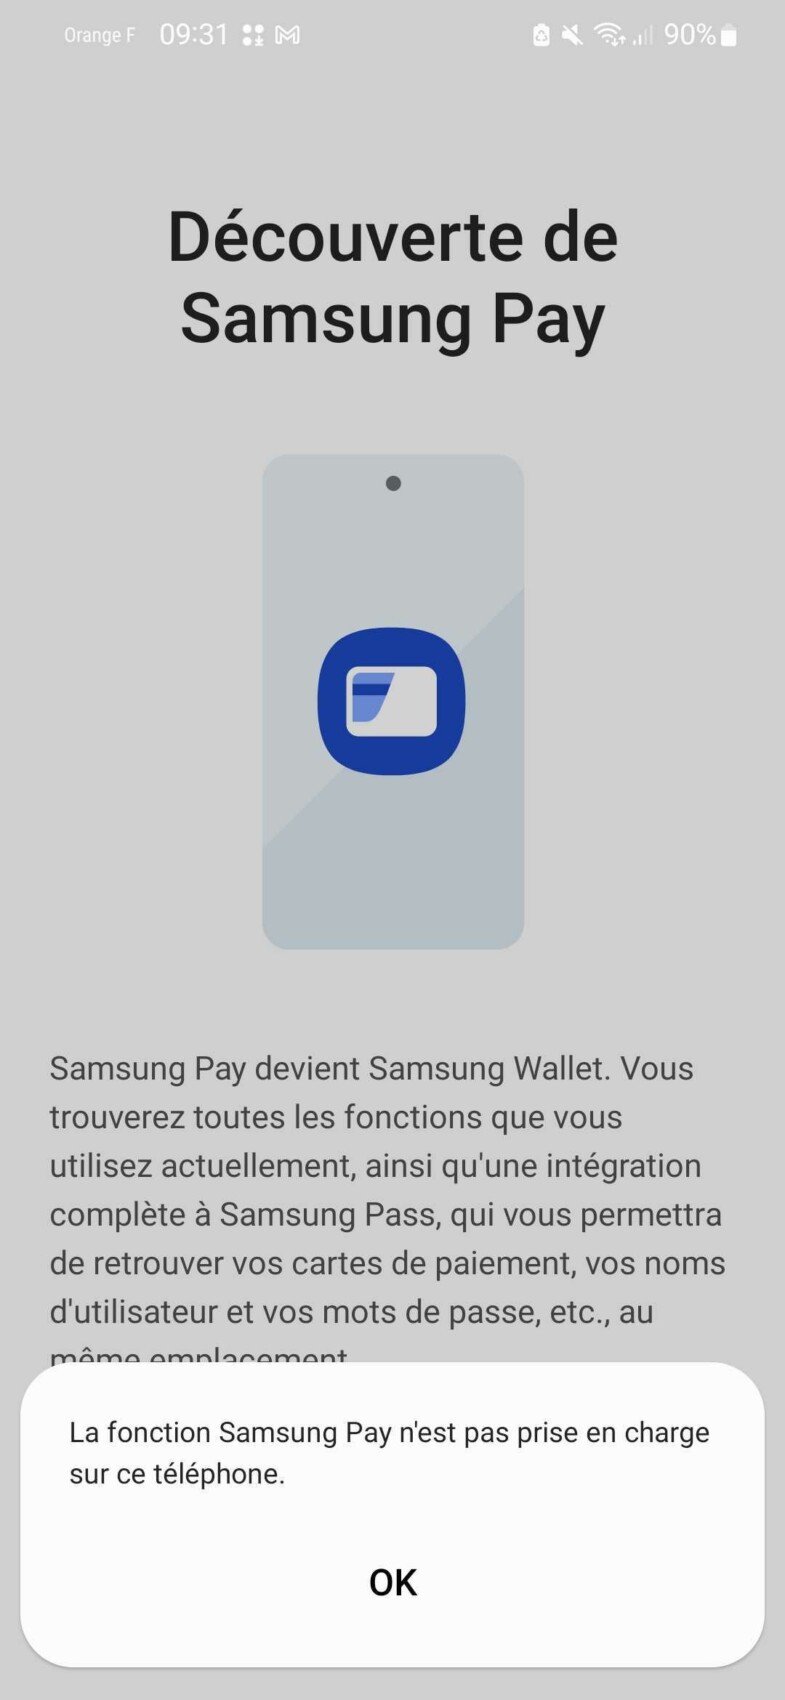 Samsung Pay Samsung Wallet error message